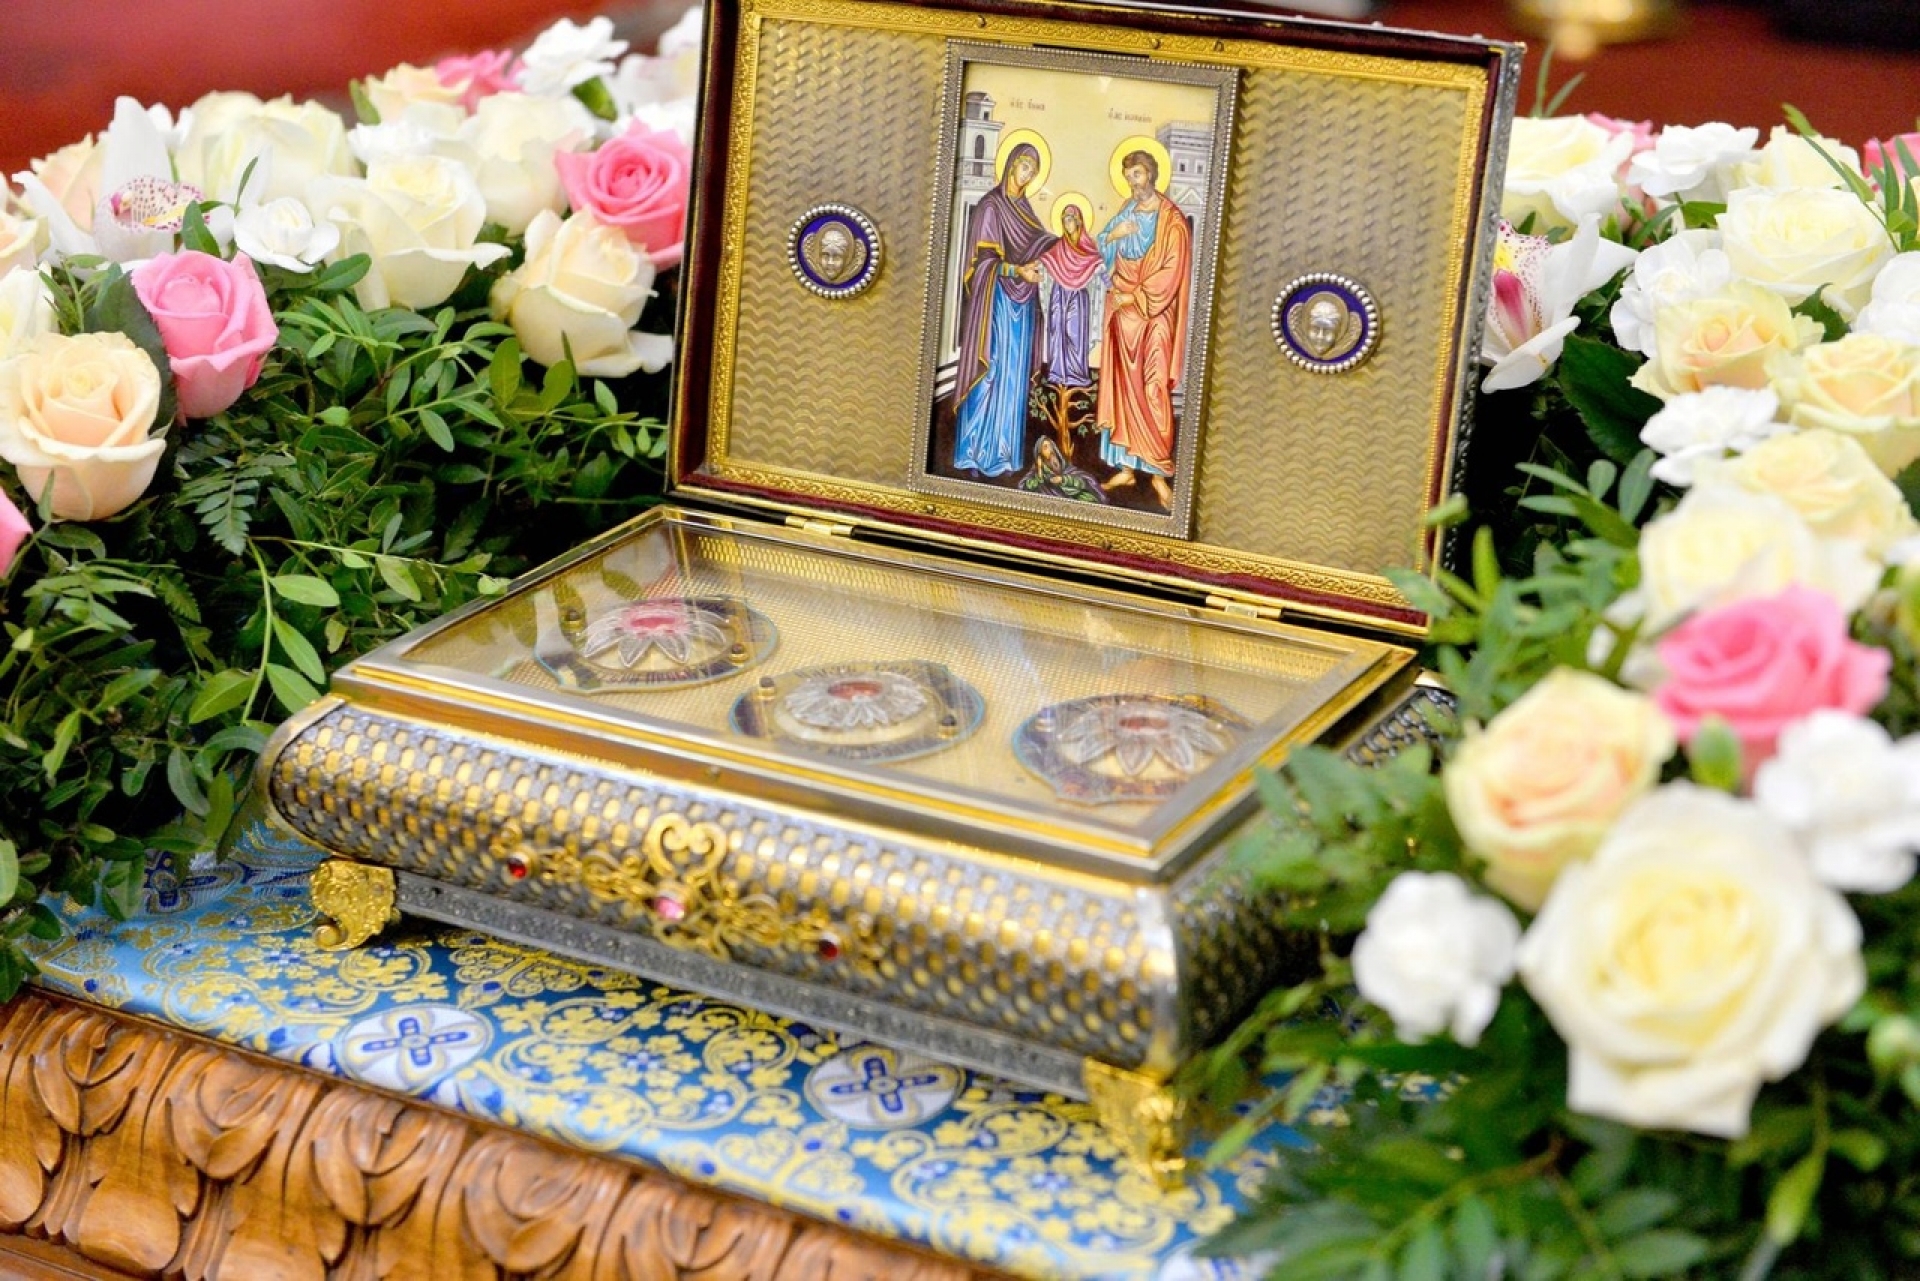 Осенью жители Красноярска смогут помолиться перед ковчегом с  частью Пояса Пресвятой Богородицы